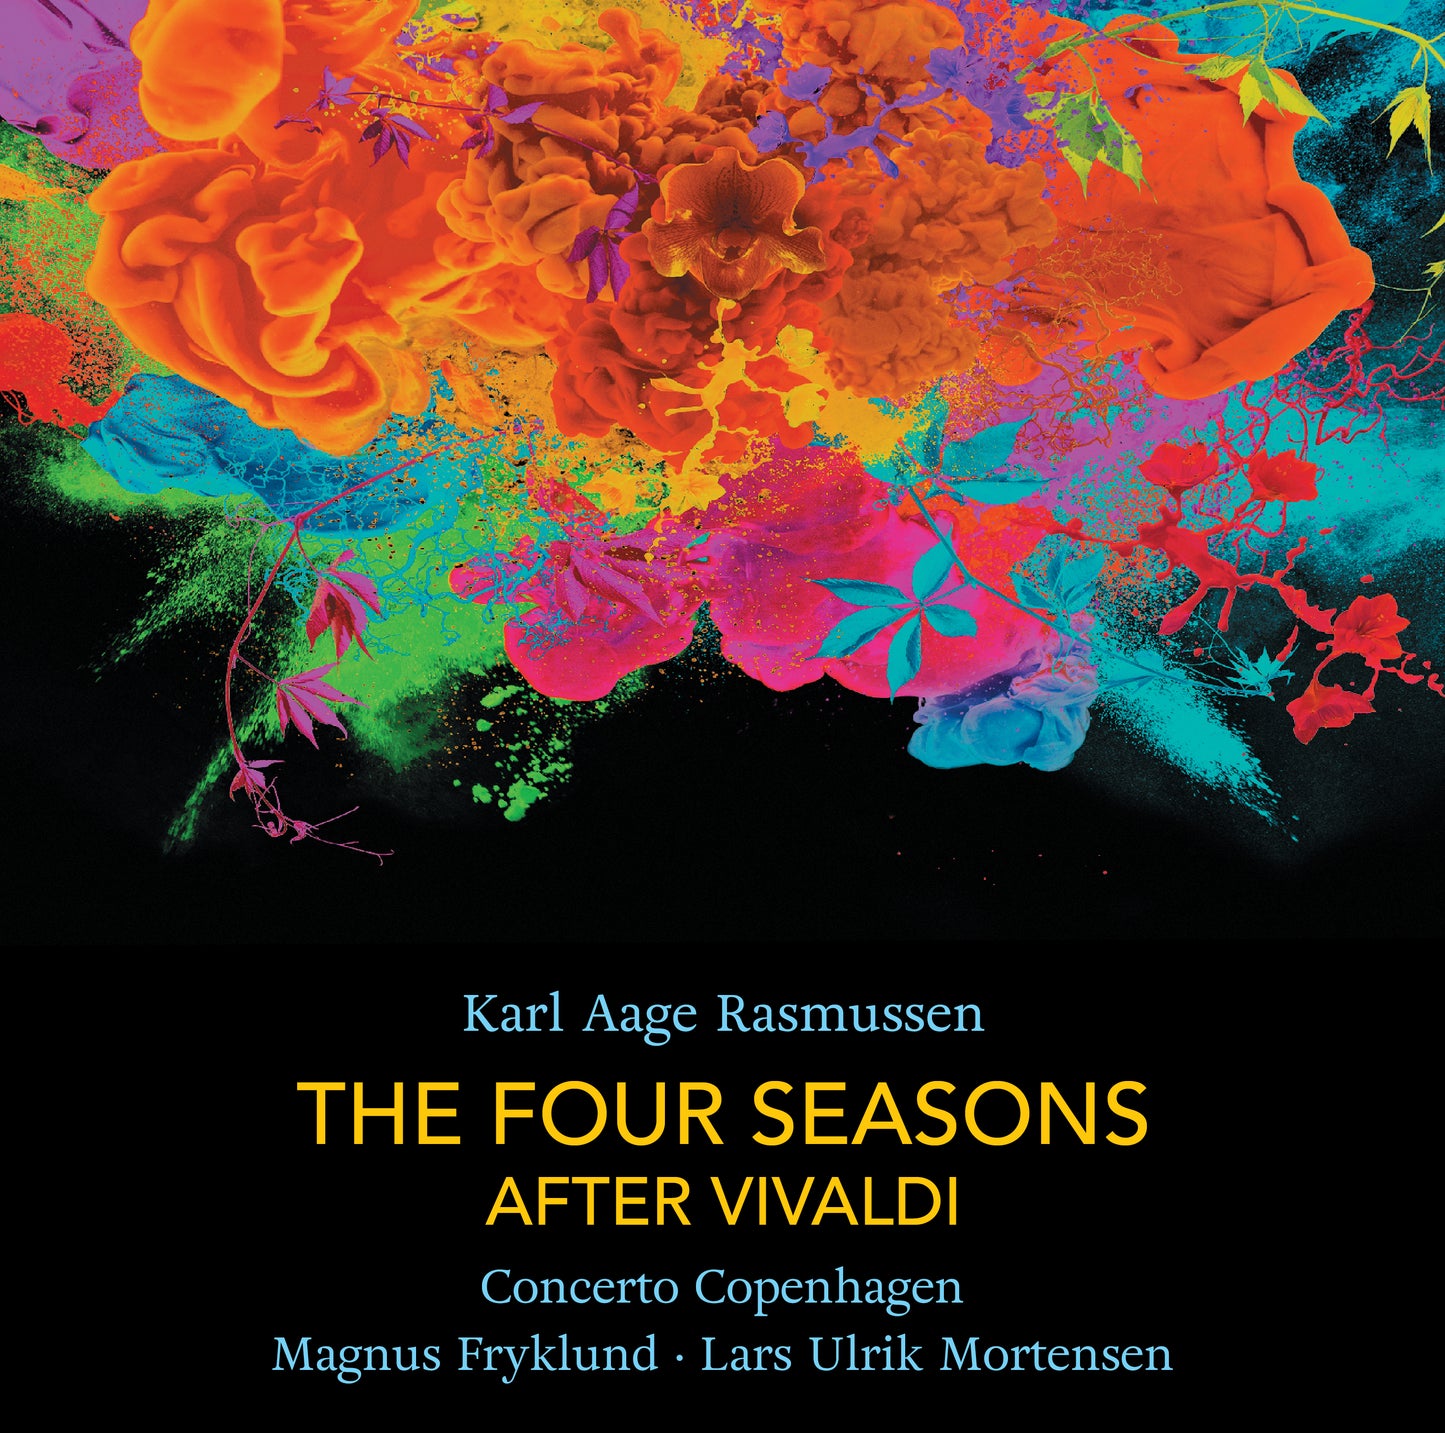 The Four Seasons After Vivaldi / Karl Aage Rasmussen